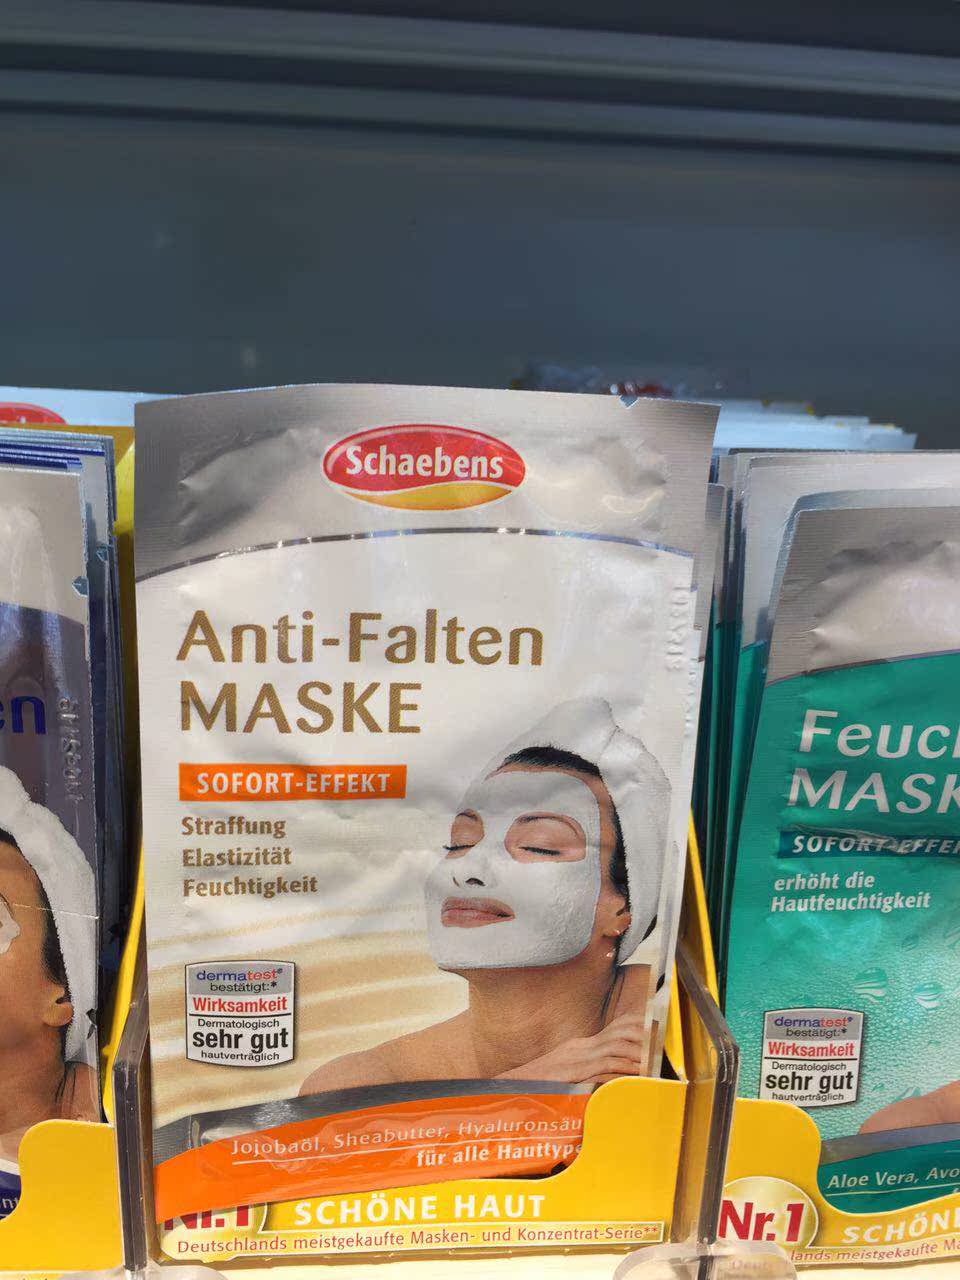 【现货】德国面膜世家雪本诗 瞬间见效抗皱Anti-falten maske